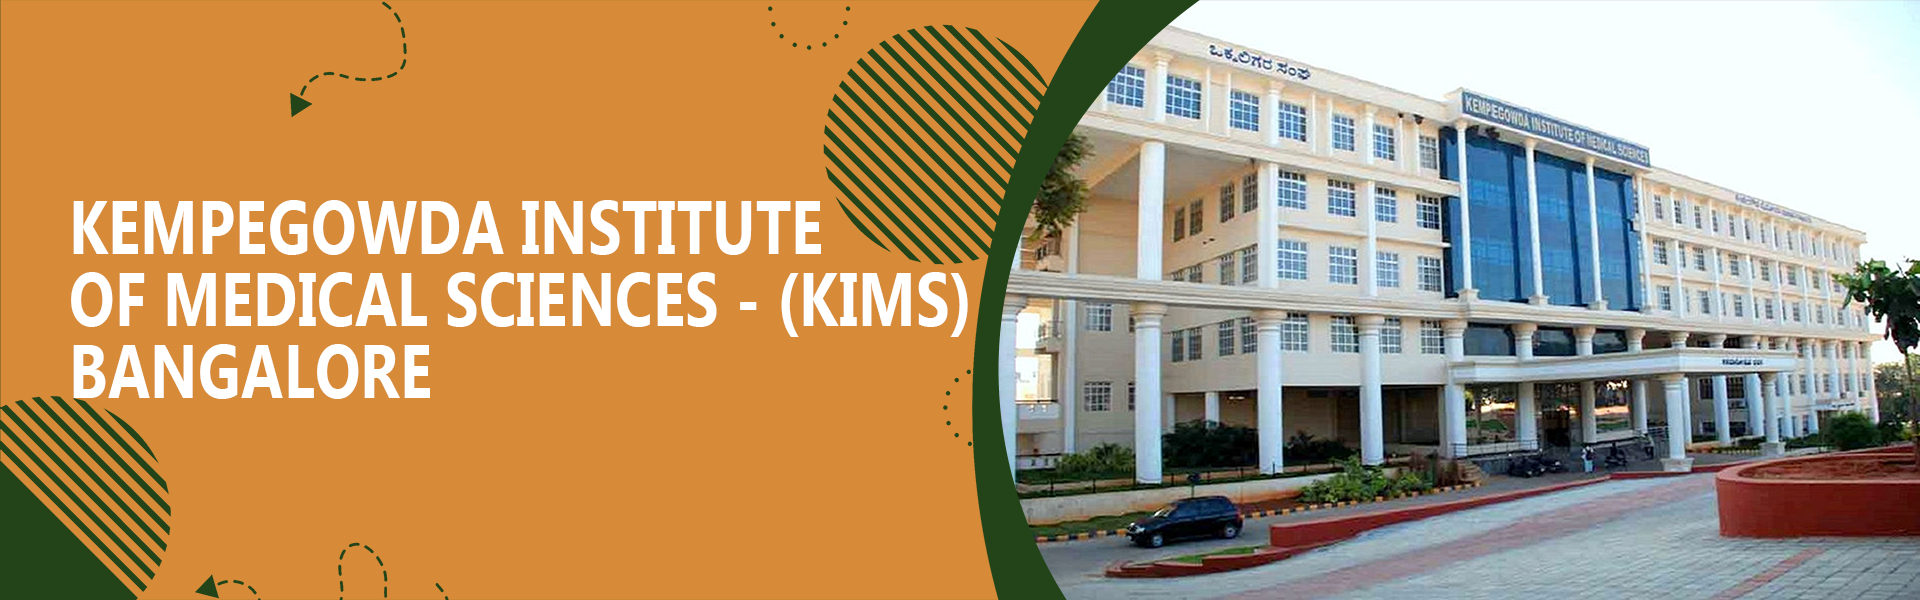 Kempegowda Institute Of Medical Sciences - (KIMS), Bangalore